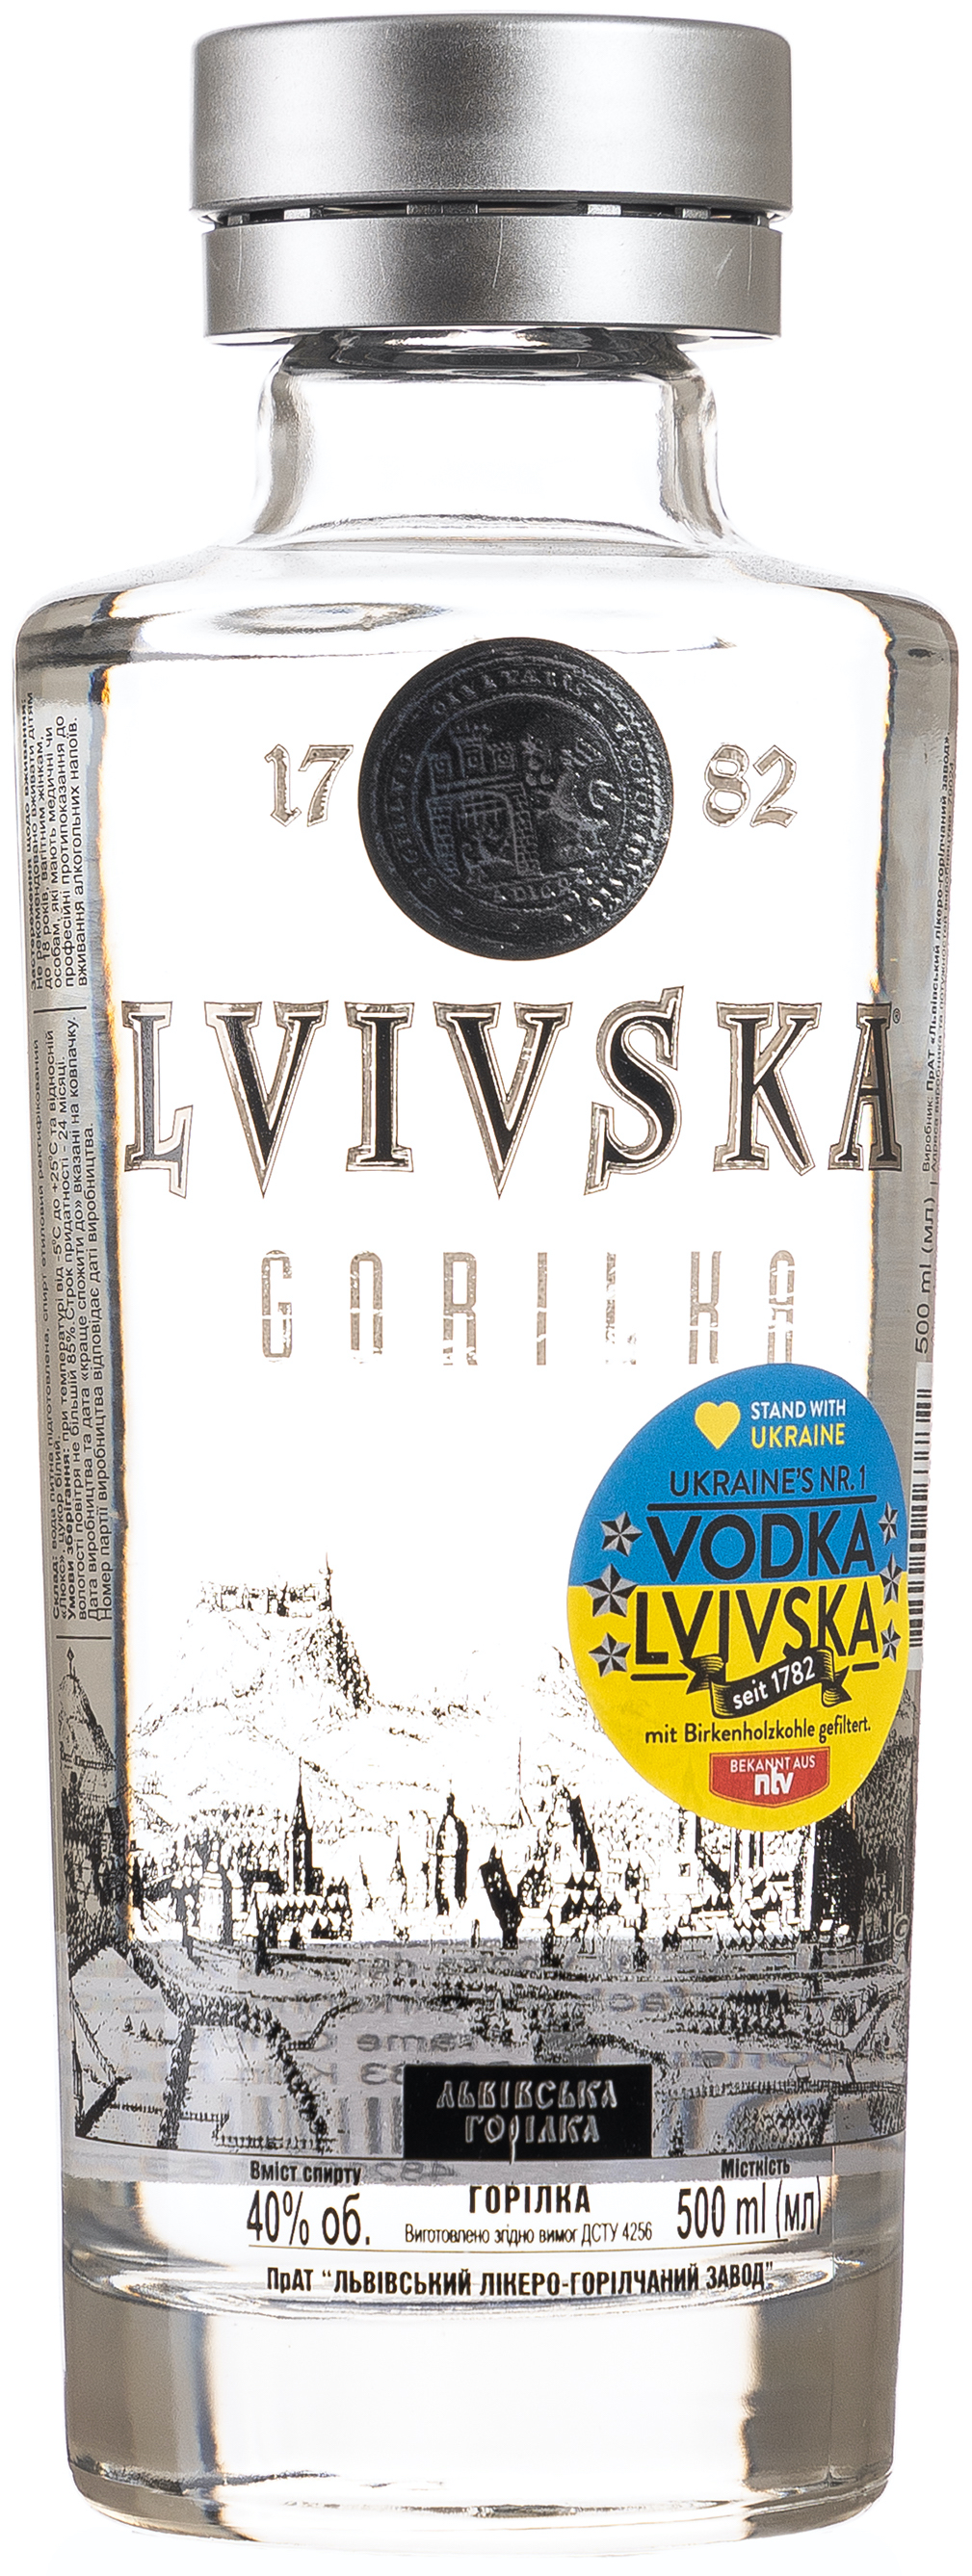 Lvivska Vodka 40% vol. 0,5L